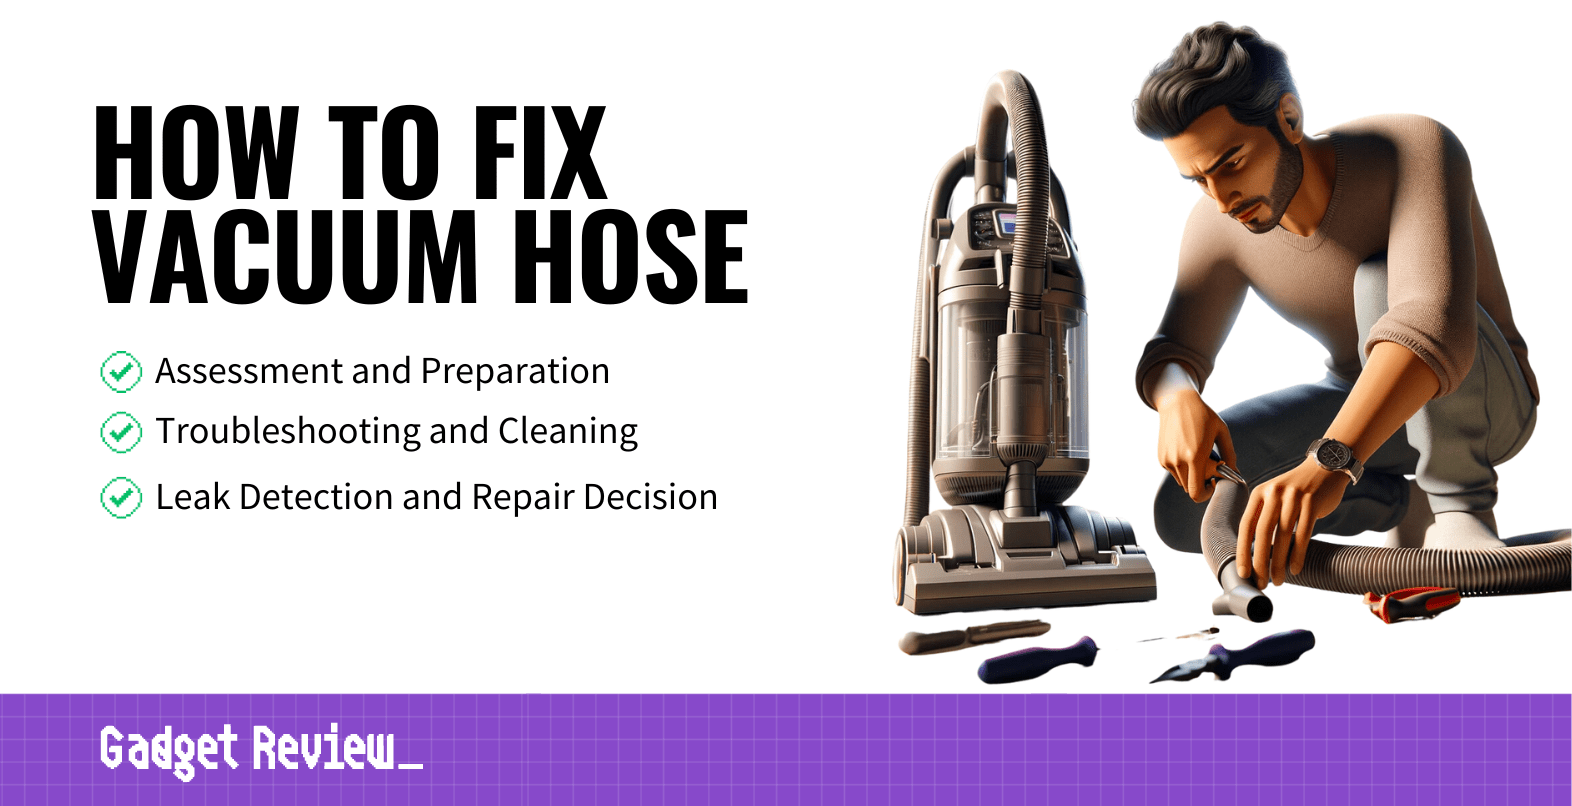 How to Fix a Vacuum Hose